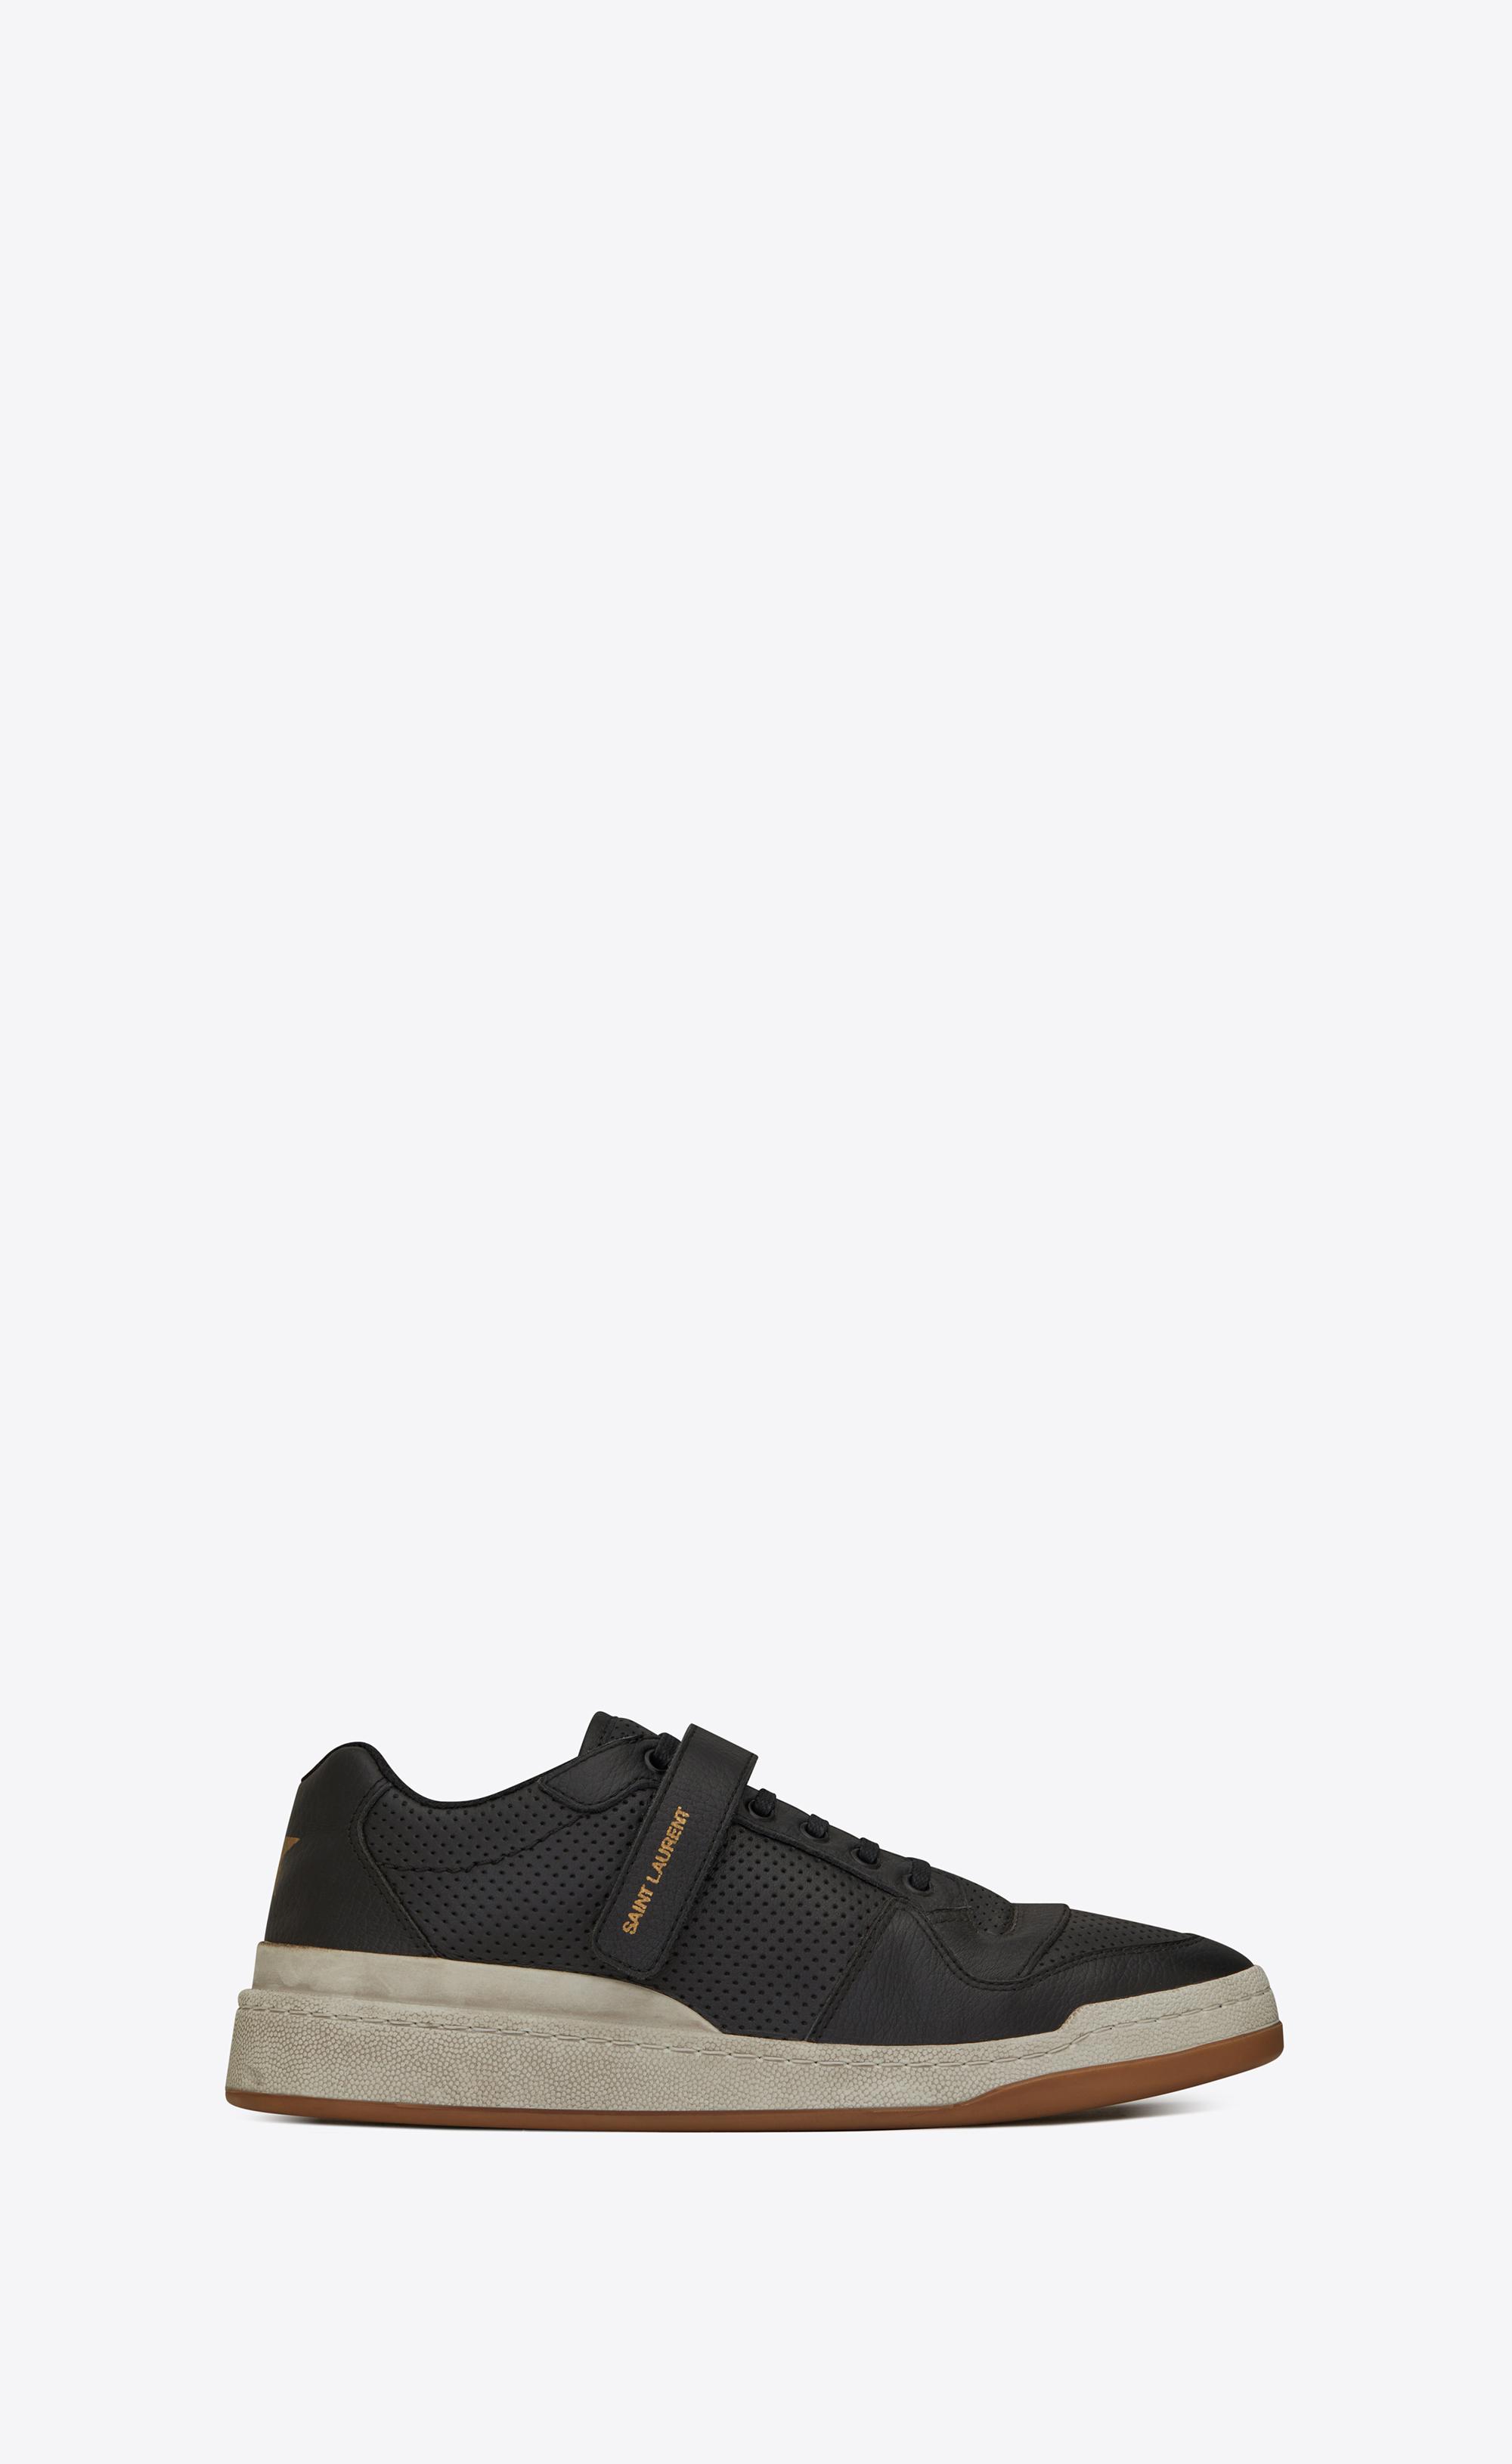 Saint Laurent Sl24 Sneakers in Black | Lyst